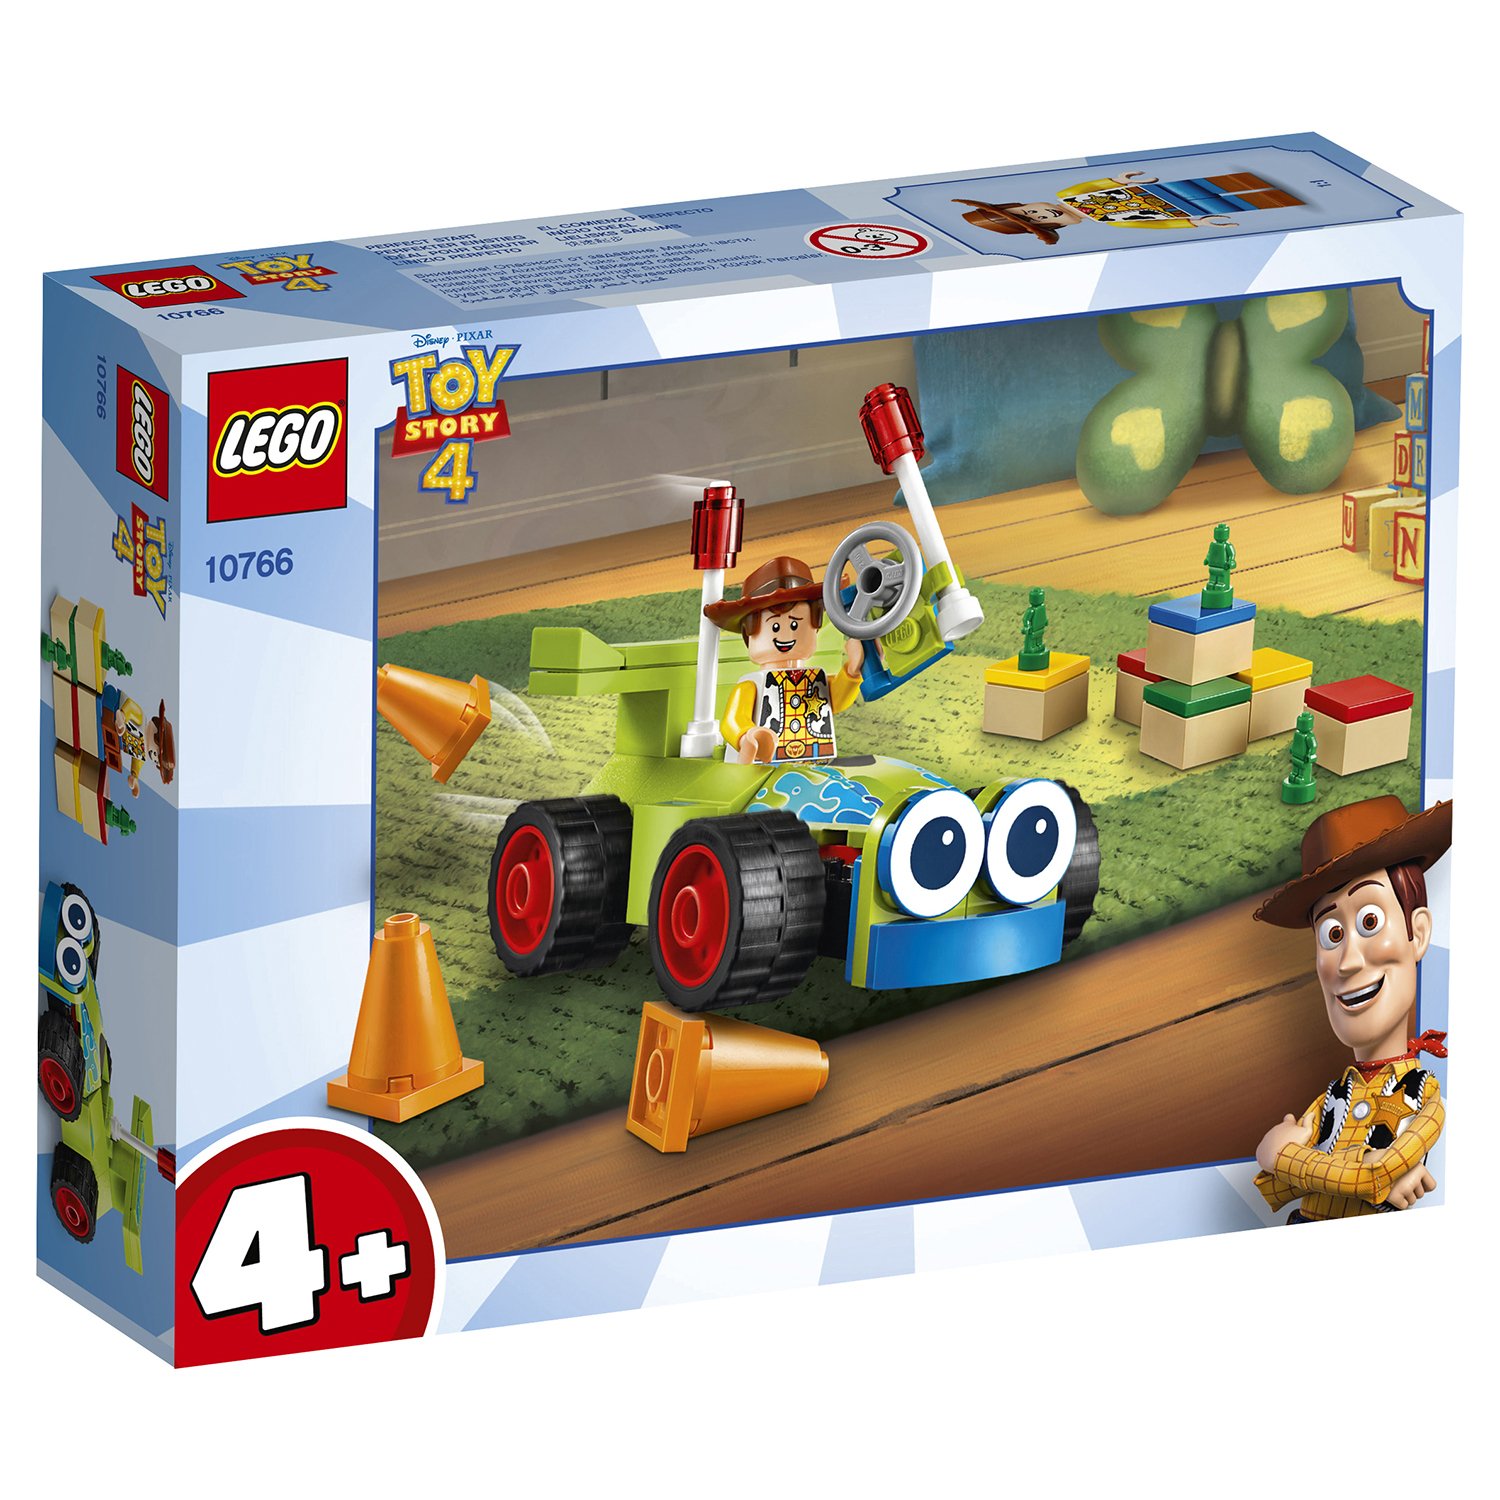 Конструктор LEGO Toy Story 4 «Вуди на машине» 10766, 69 деталей